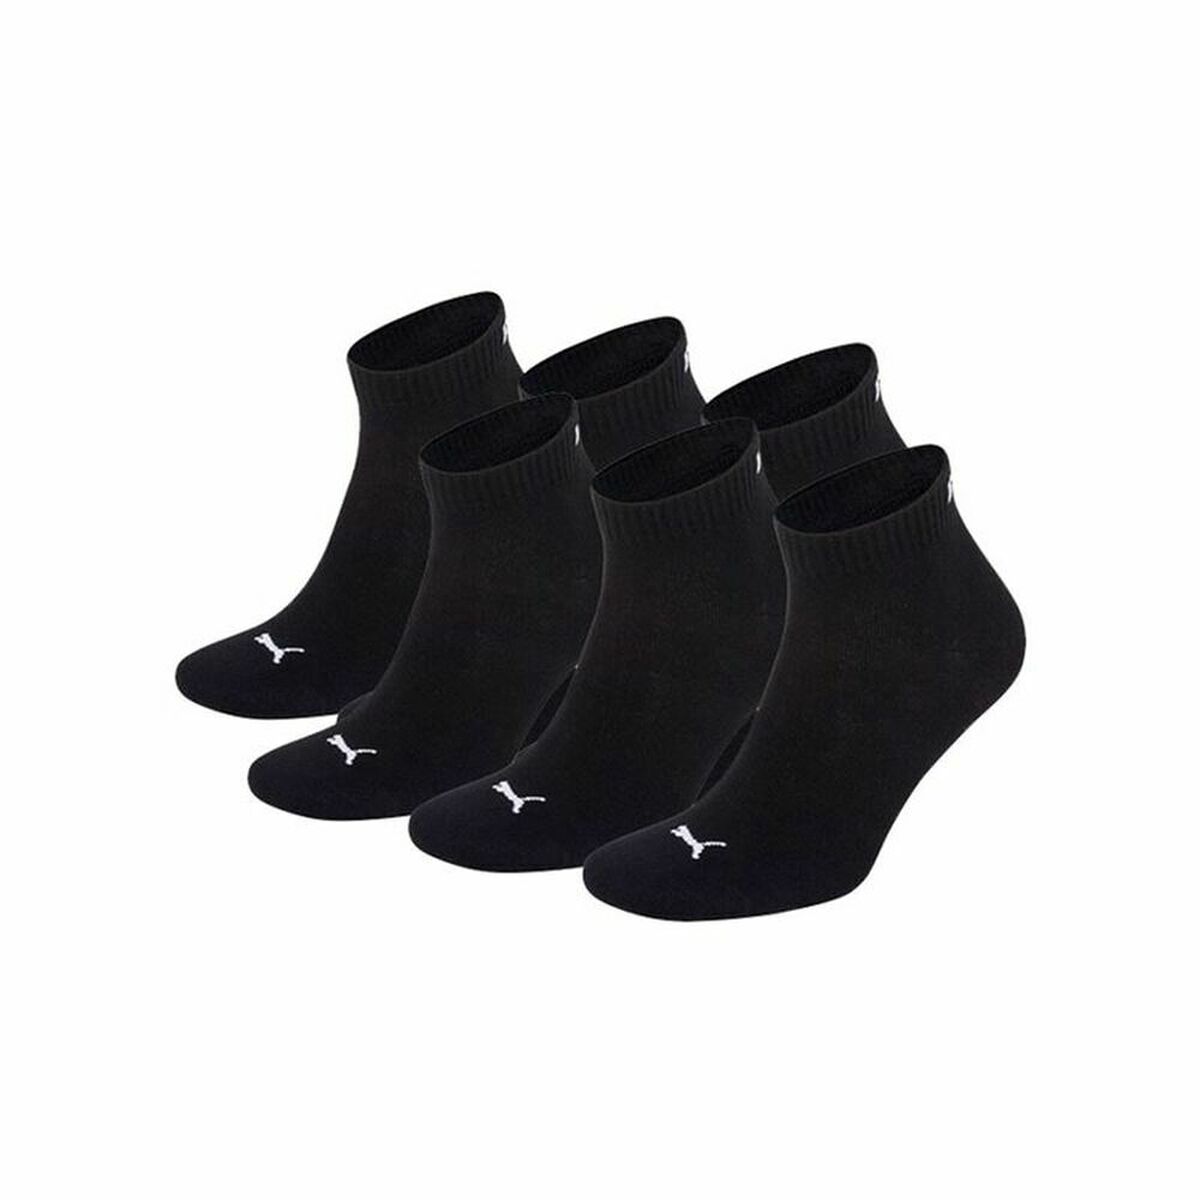 Sports Socks Puma 271080001 9 PAAR Black